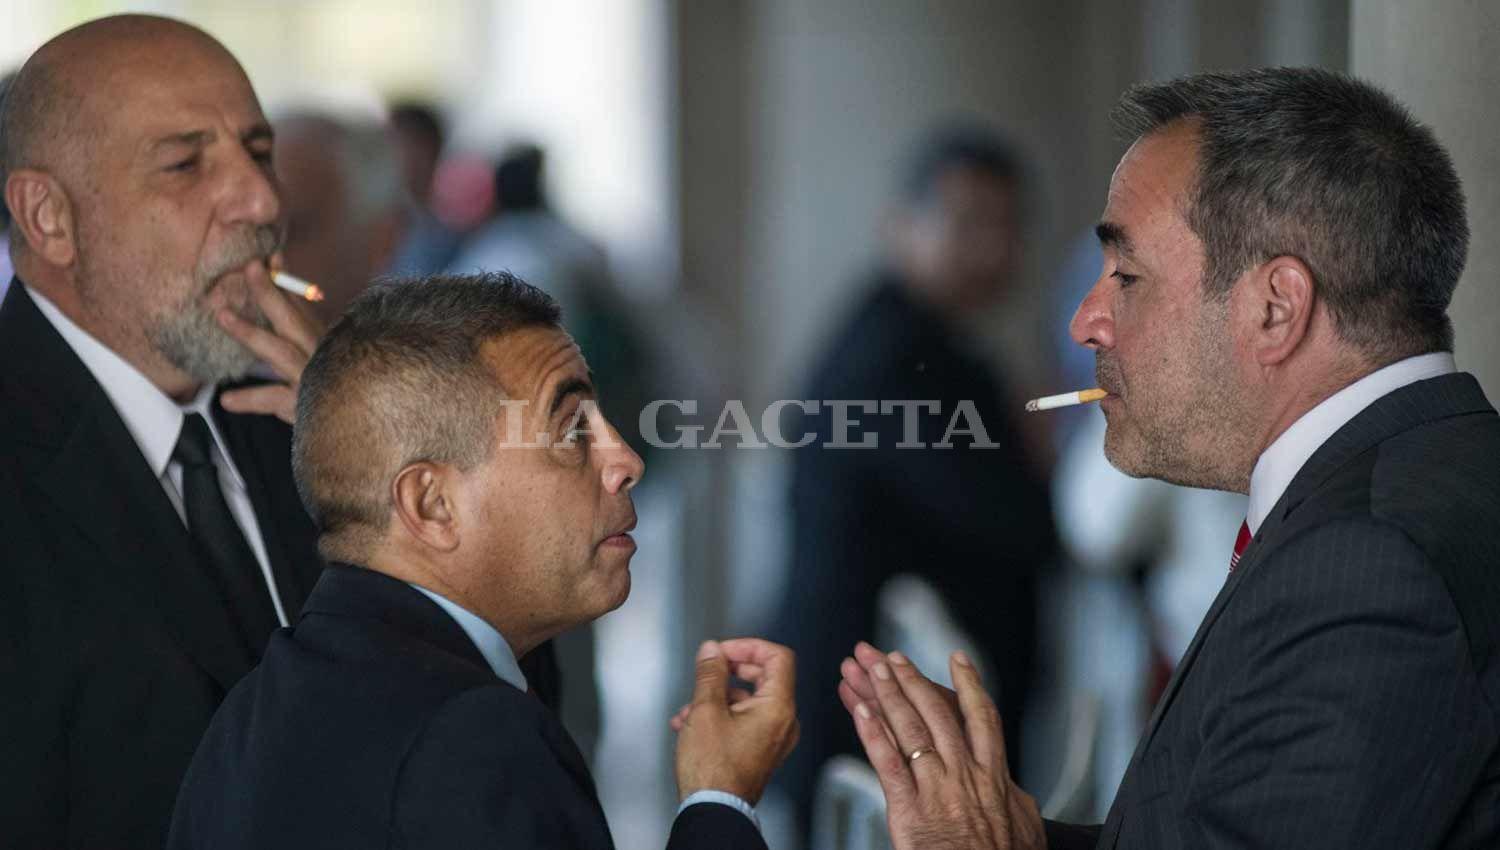 Los abogados defensores Morfil y Carlino hablan durante un cuarto intermedio con el fiscal de Instrucción Diego López Ávila. LA GACETA / FOTO DE JORGE OLMOS SGROSSO